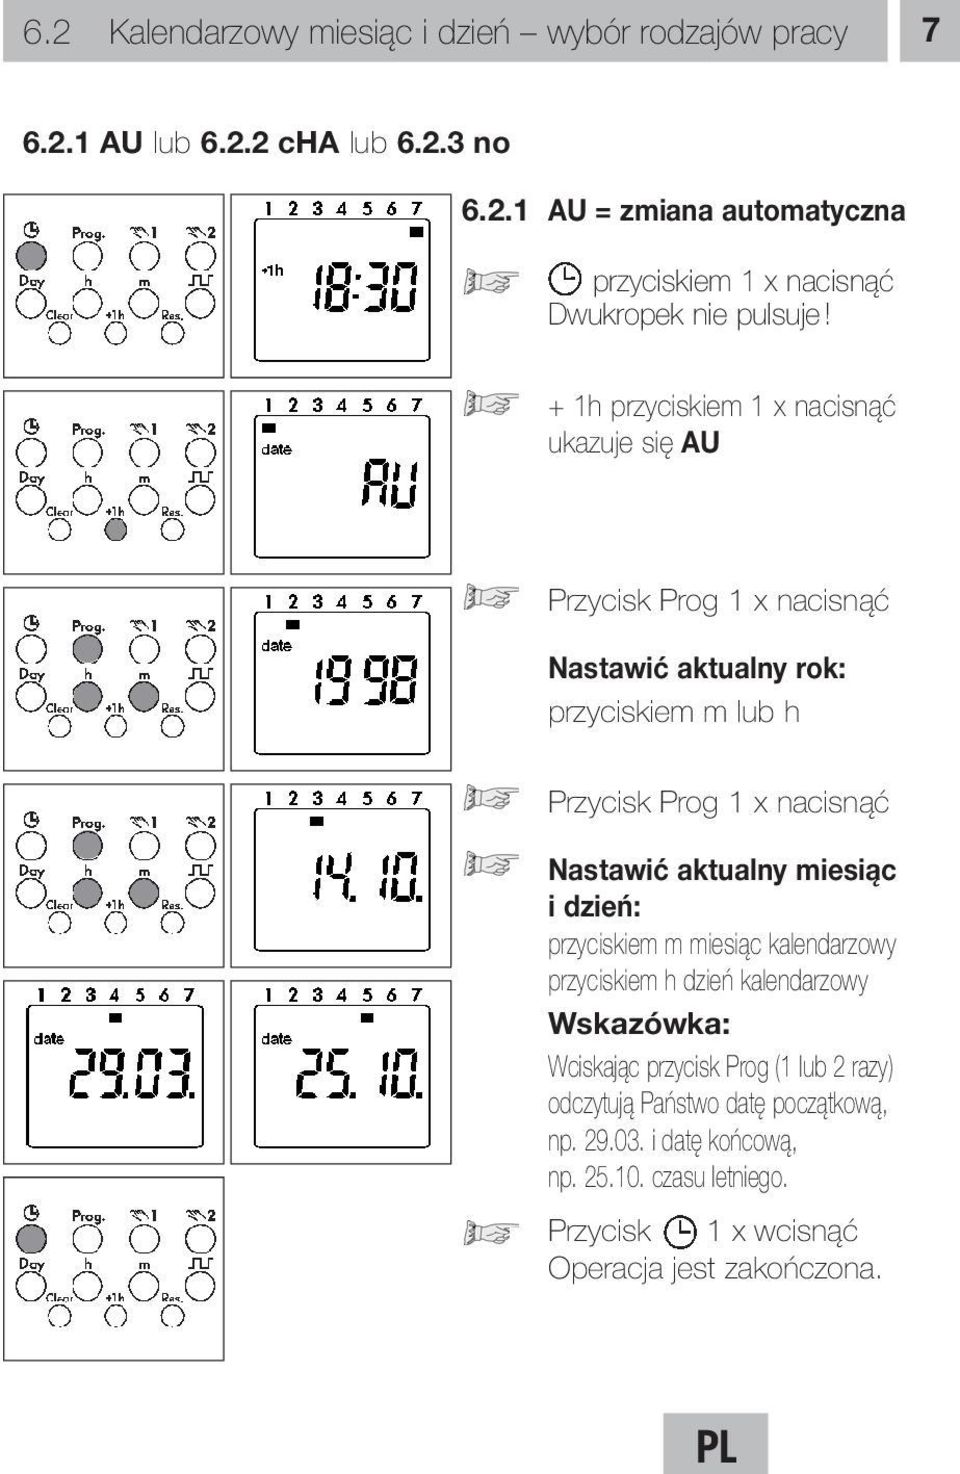 Nastawić aktualny miesiąc i dzień: przyciskiem m miesiąc kalendarzowy przyciskiem h dzień kalendarzowy Wciskając przycisk Prog (1 lub 2 razy)